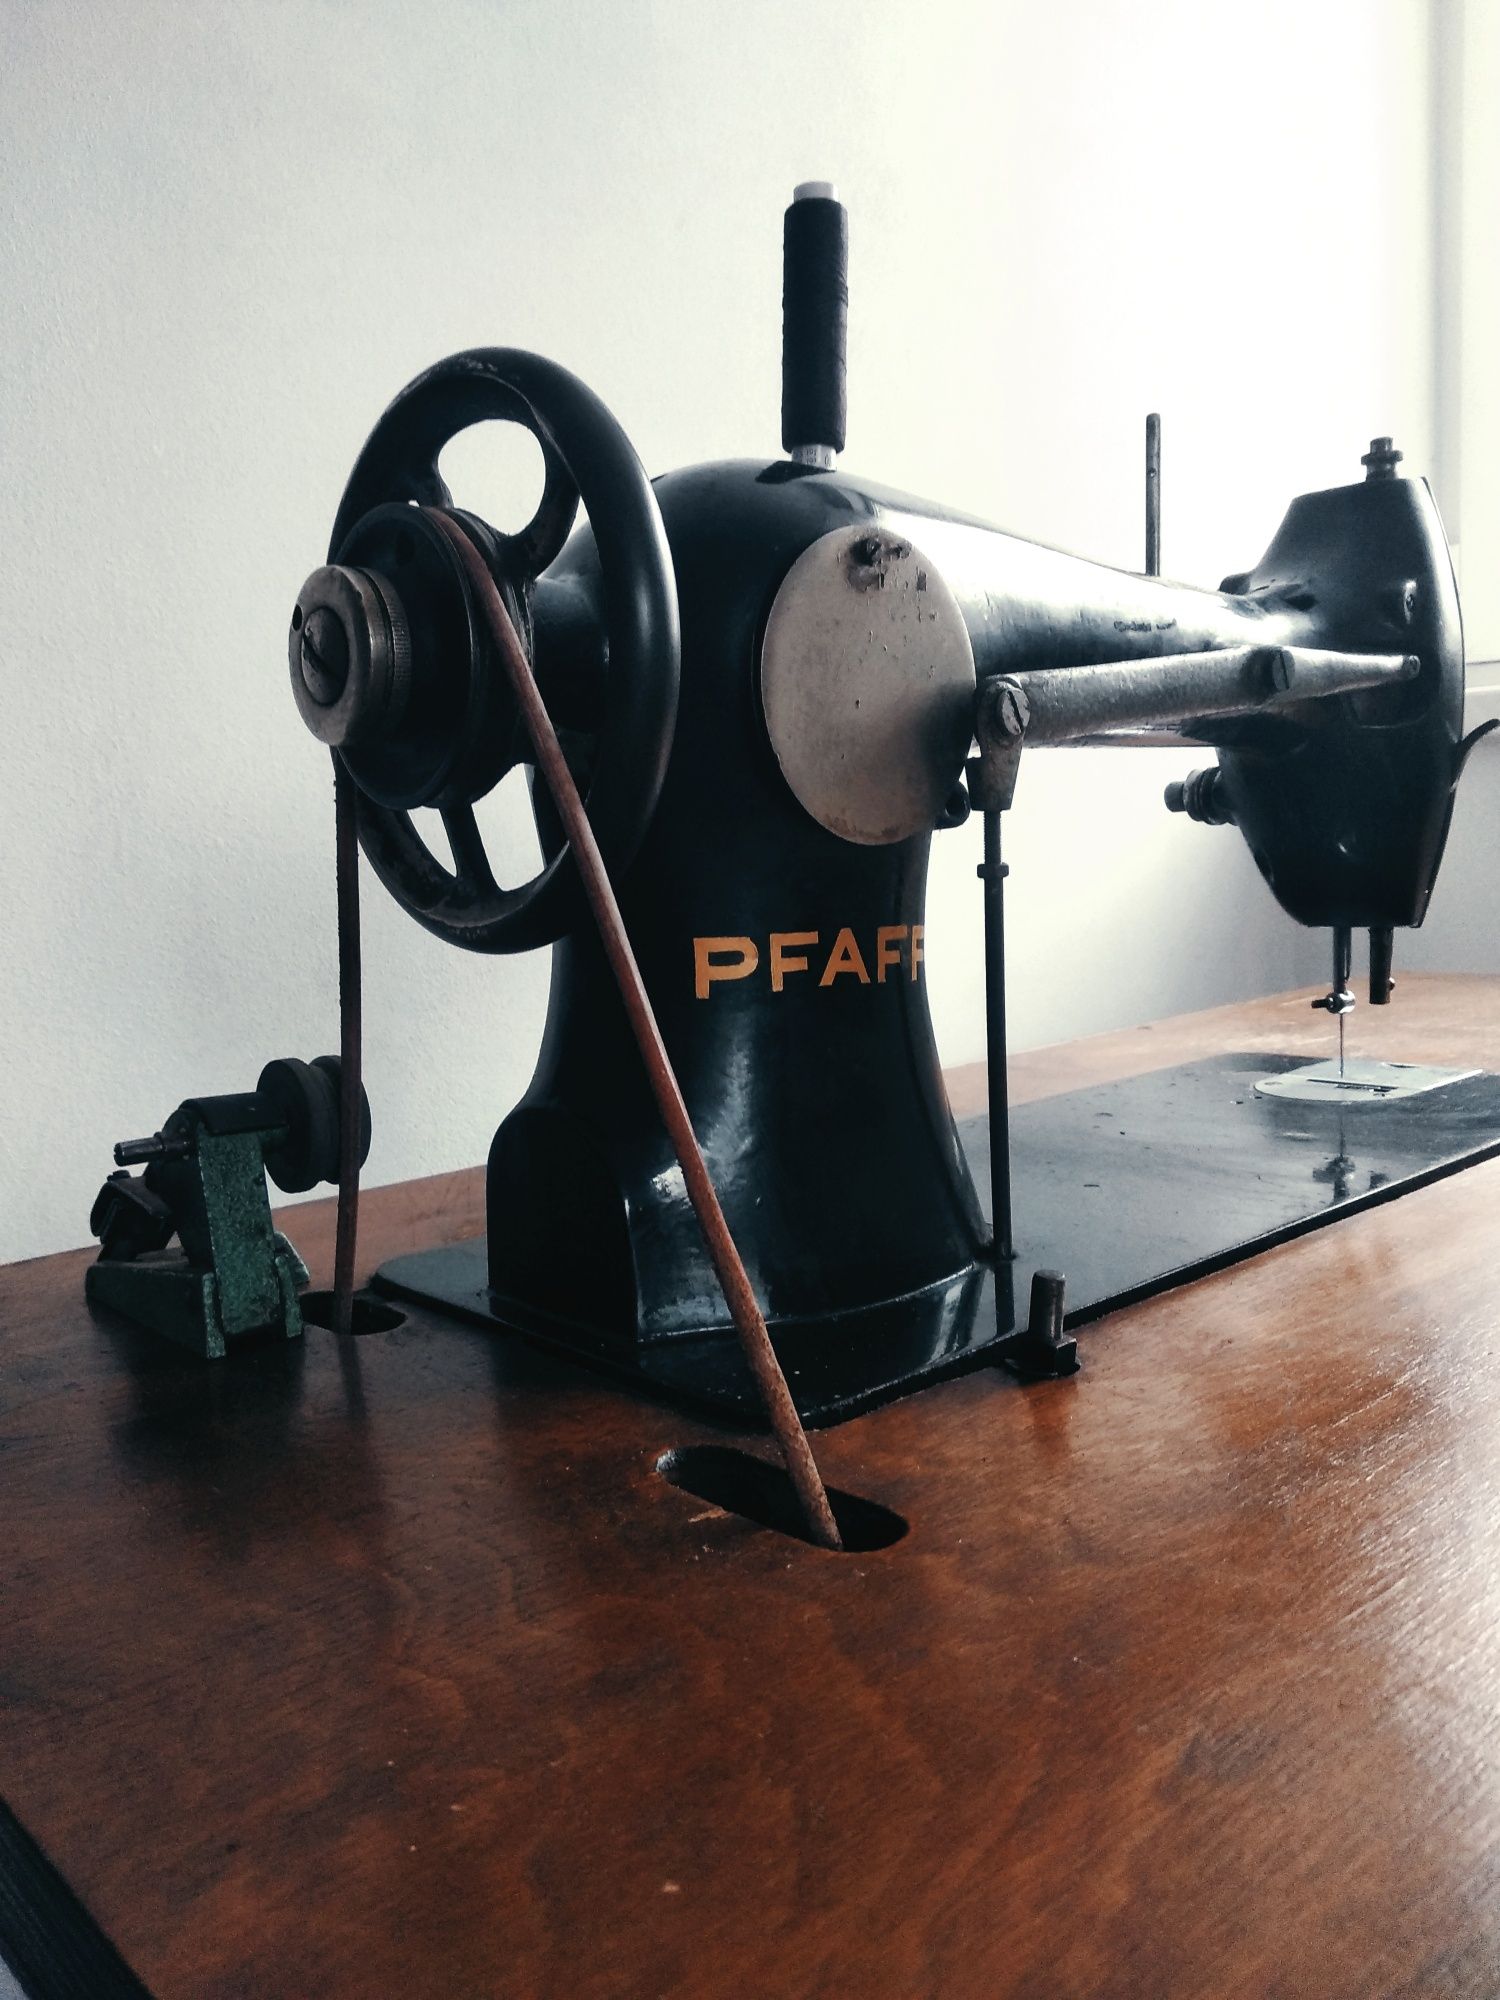 Pfaff działająca, zabytkowa maszyna do szycia na stoliku